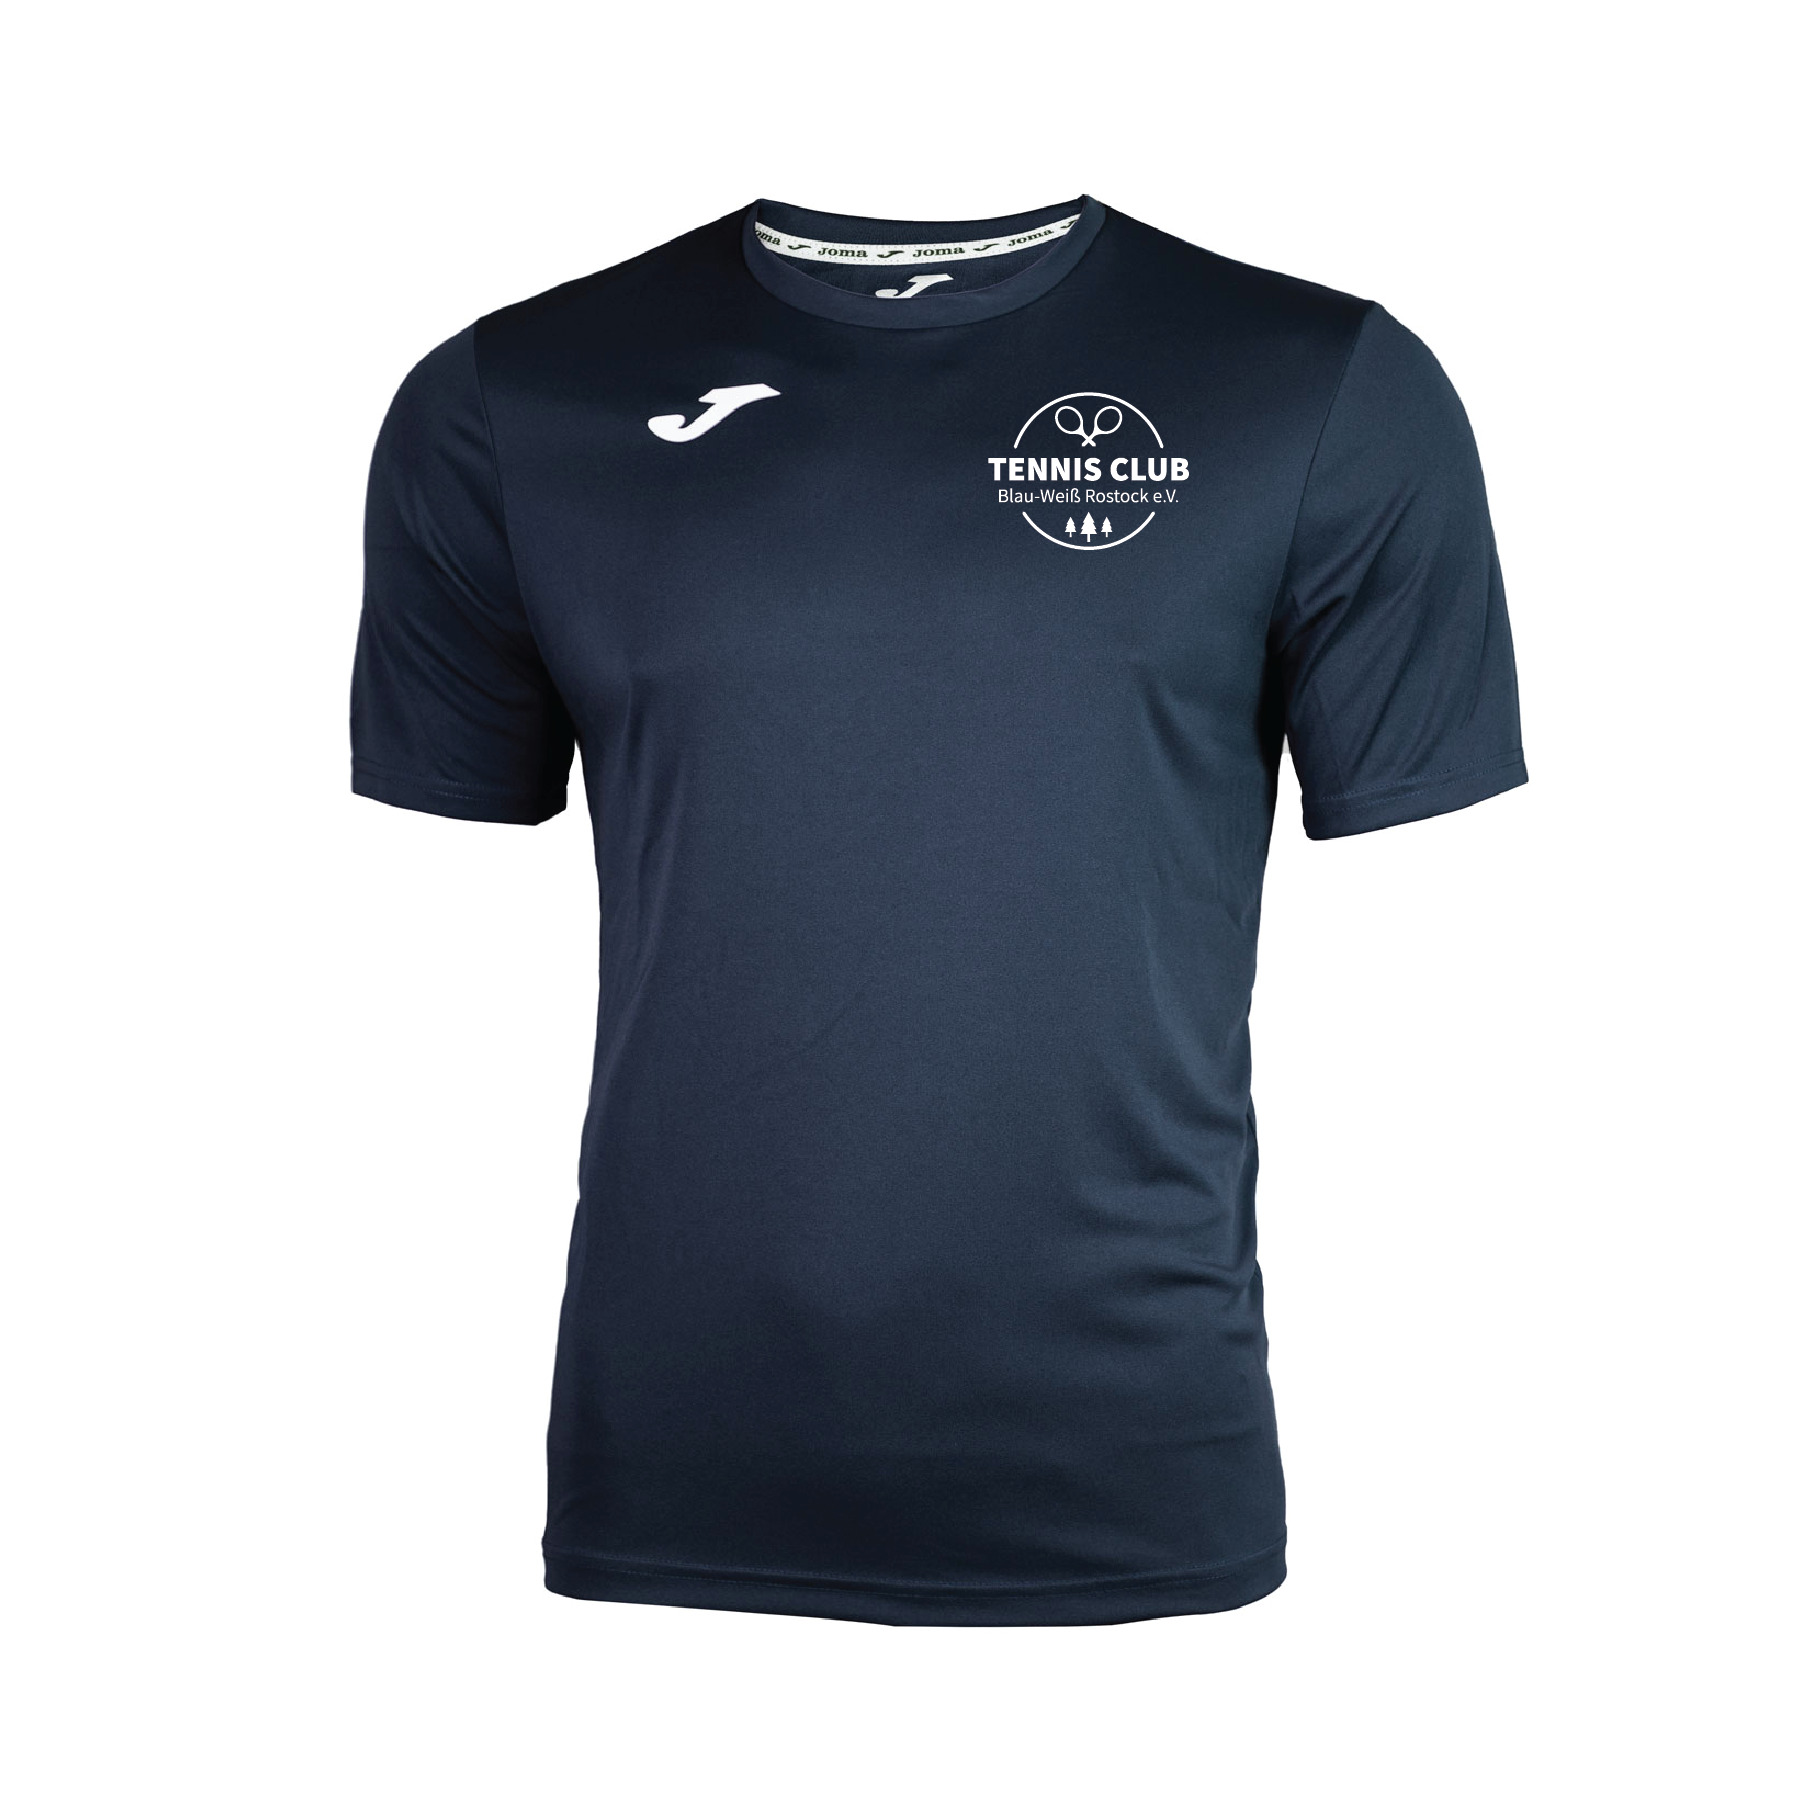 TC Blau Weiß Rostock - T-Shirt Combi - Kinder » sportdruck & meer